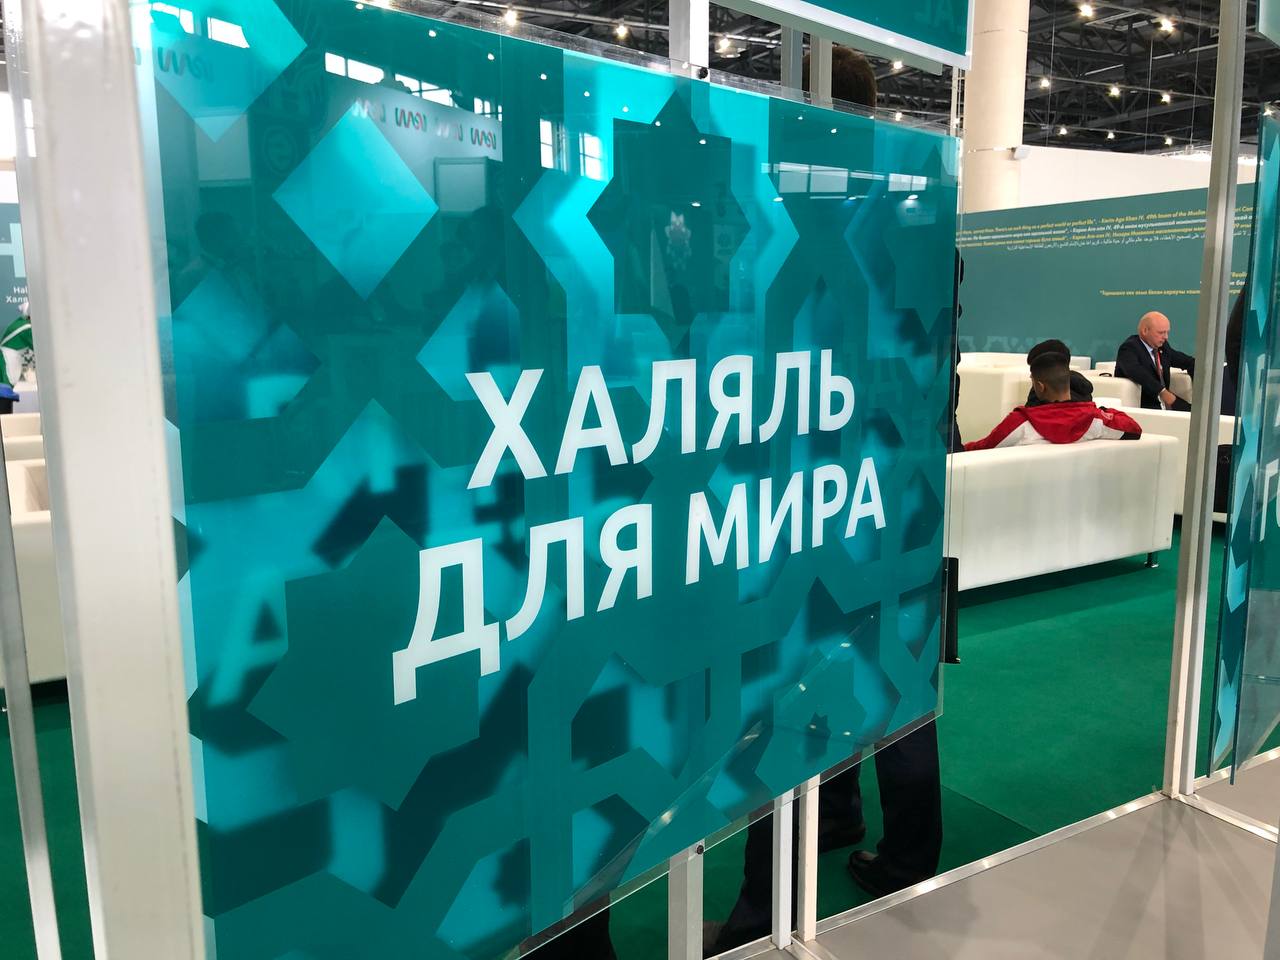 Перспектива потребления: в Татарстане предложили создать халяль-хаб